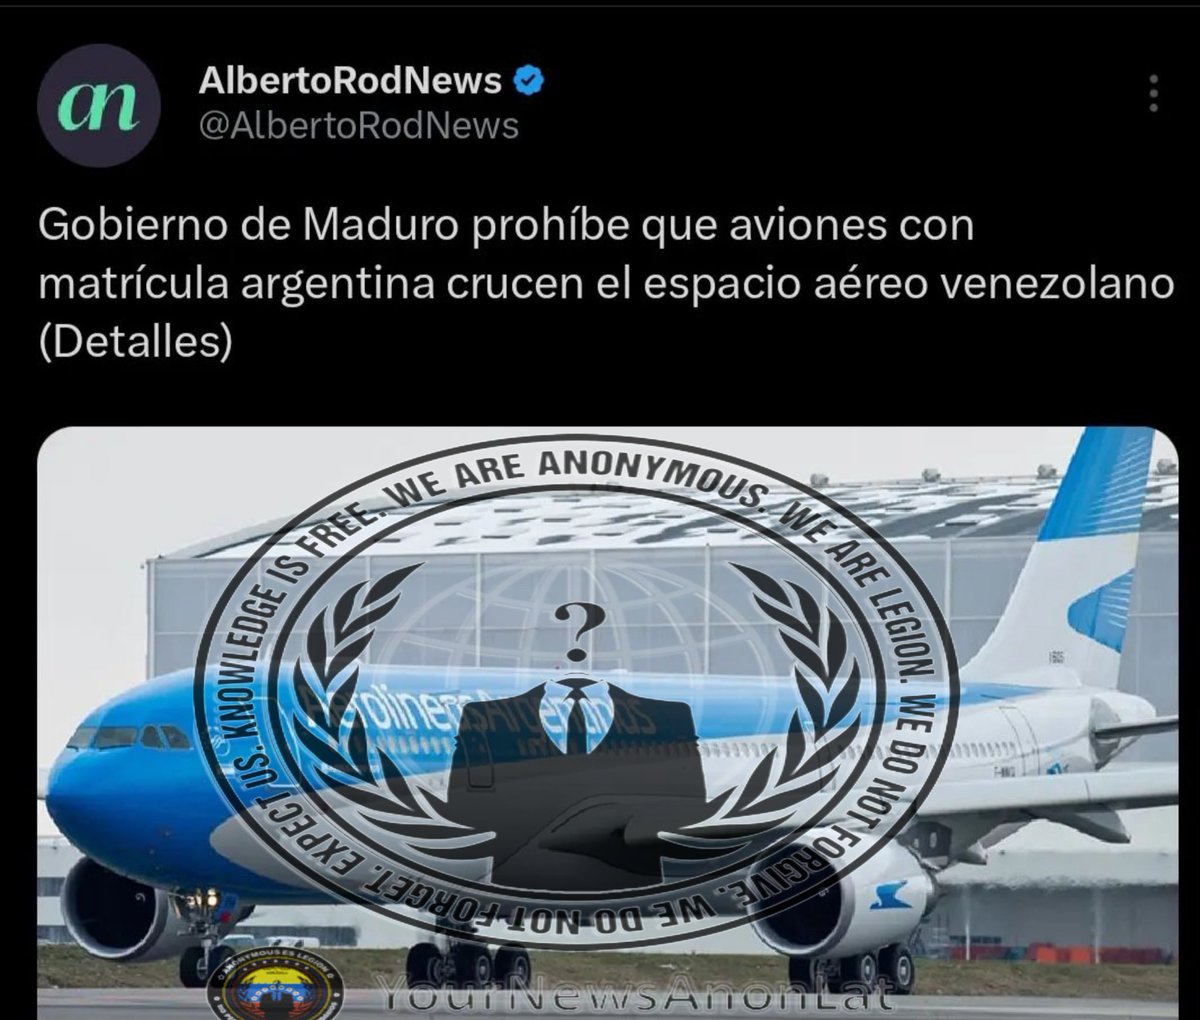 Lo mejor que puede hacer Venezuela es utilizar los Sukhoi 30-MK2 para obligar a toda aeronave argentina o americana que sobrevuele nuestro espacio aéreo a qué descienda inmediatamente, para compensar la que fue destruida ilegalmente. ¡Los bienes de Venezuela se respetan!